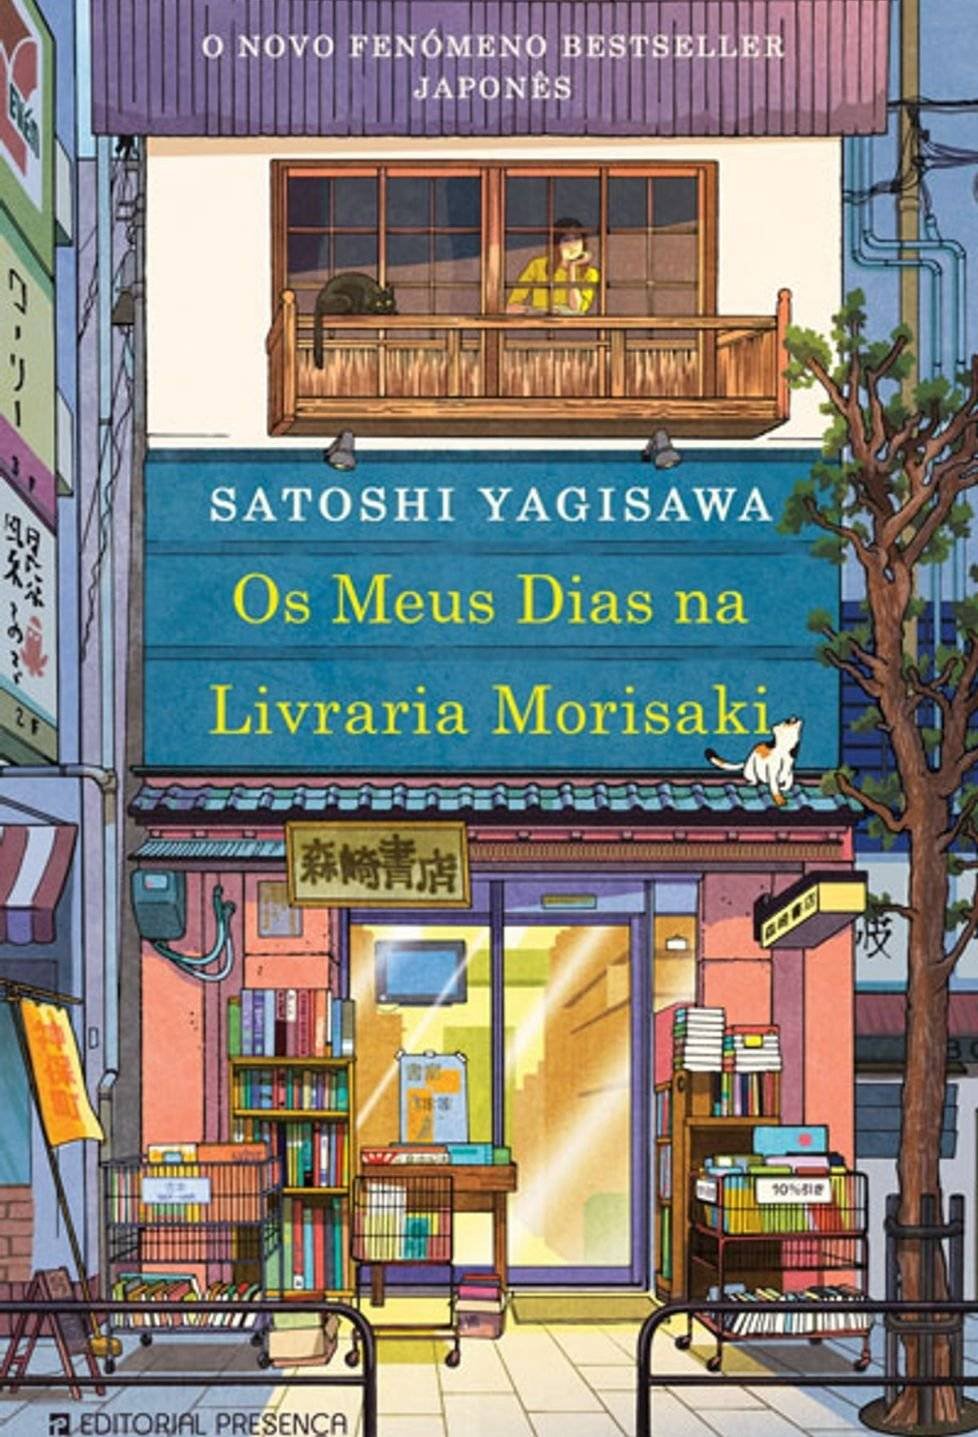 Os Meus Dias na Livraria Morisaki - Satoshi Yagisawa PDF